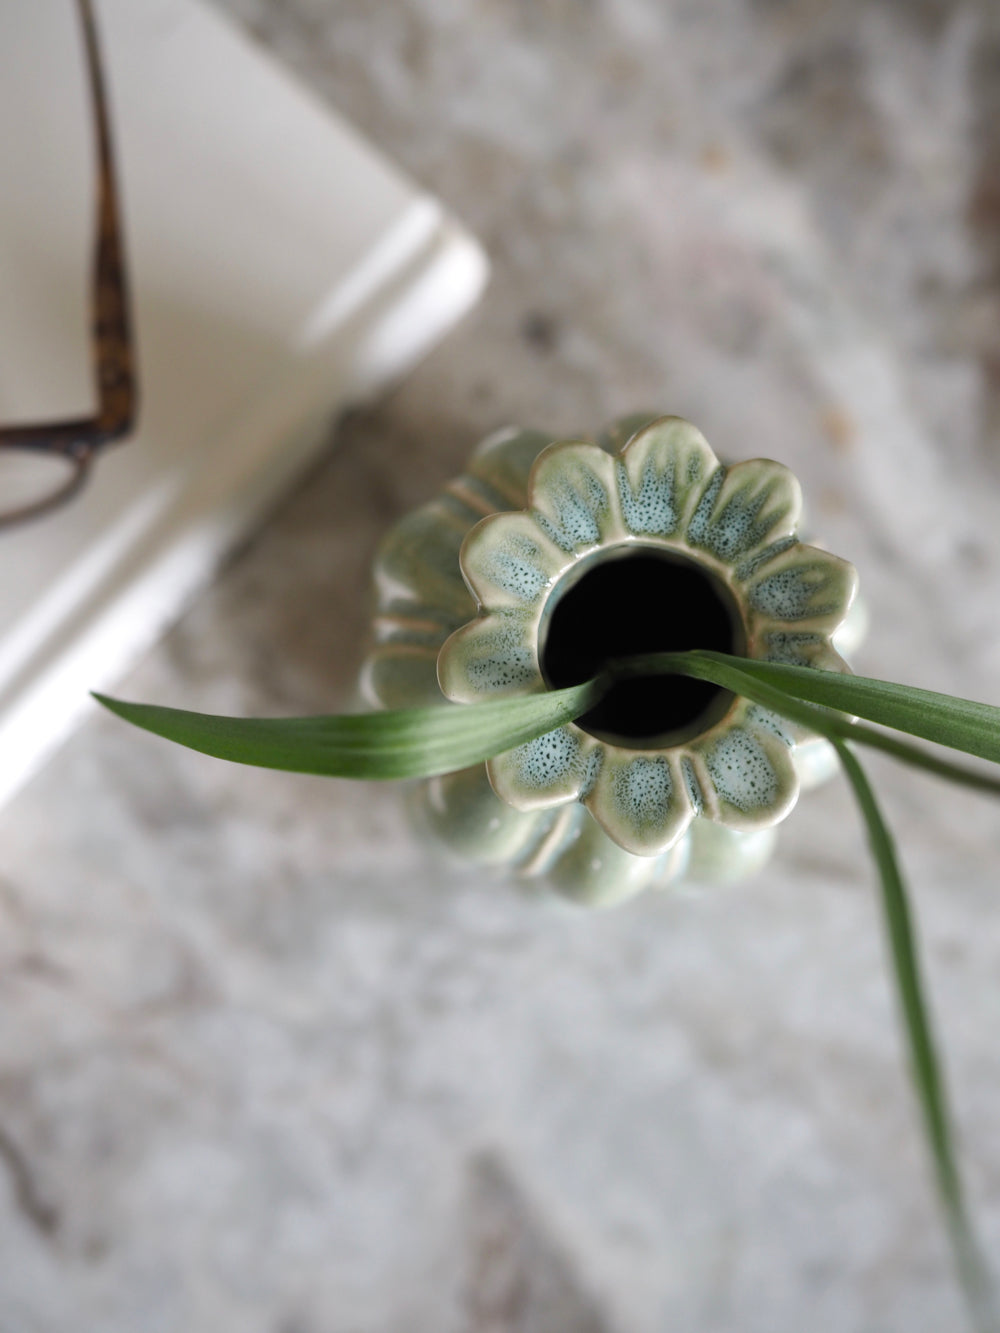 Grøn lille vase